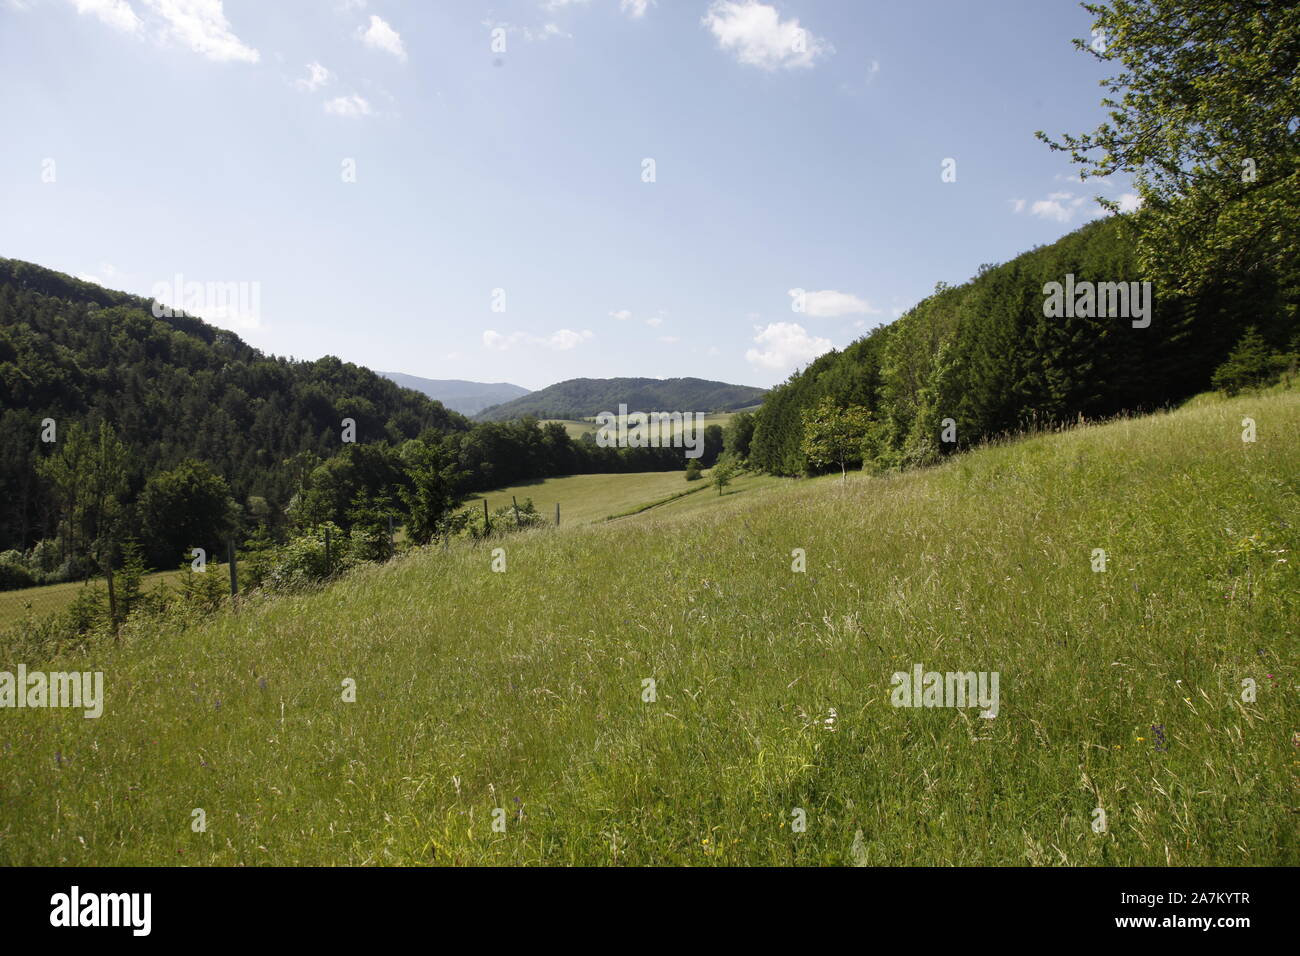 Slovak countryside in Strážovské vrchy mountains Stock Photo